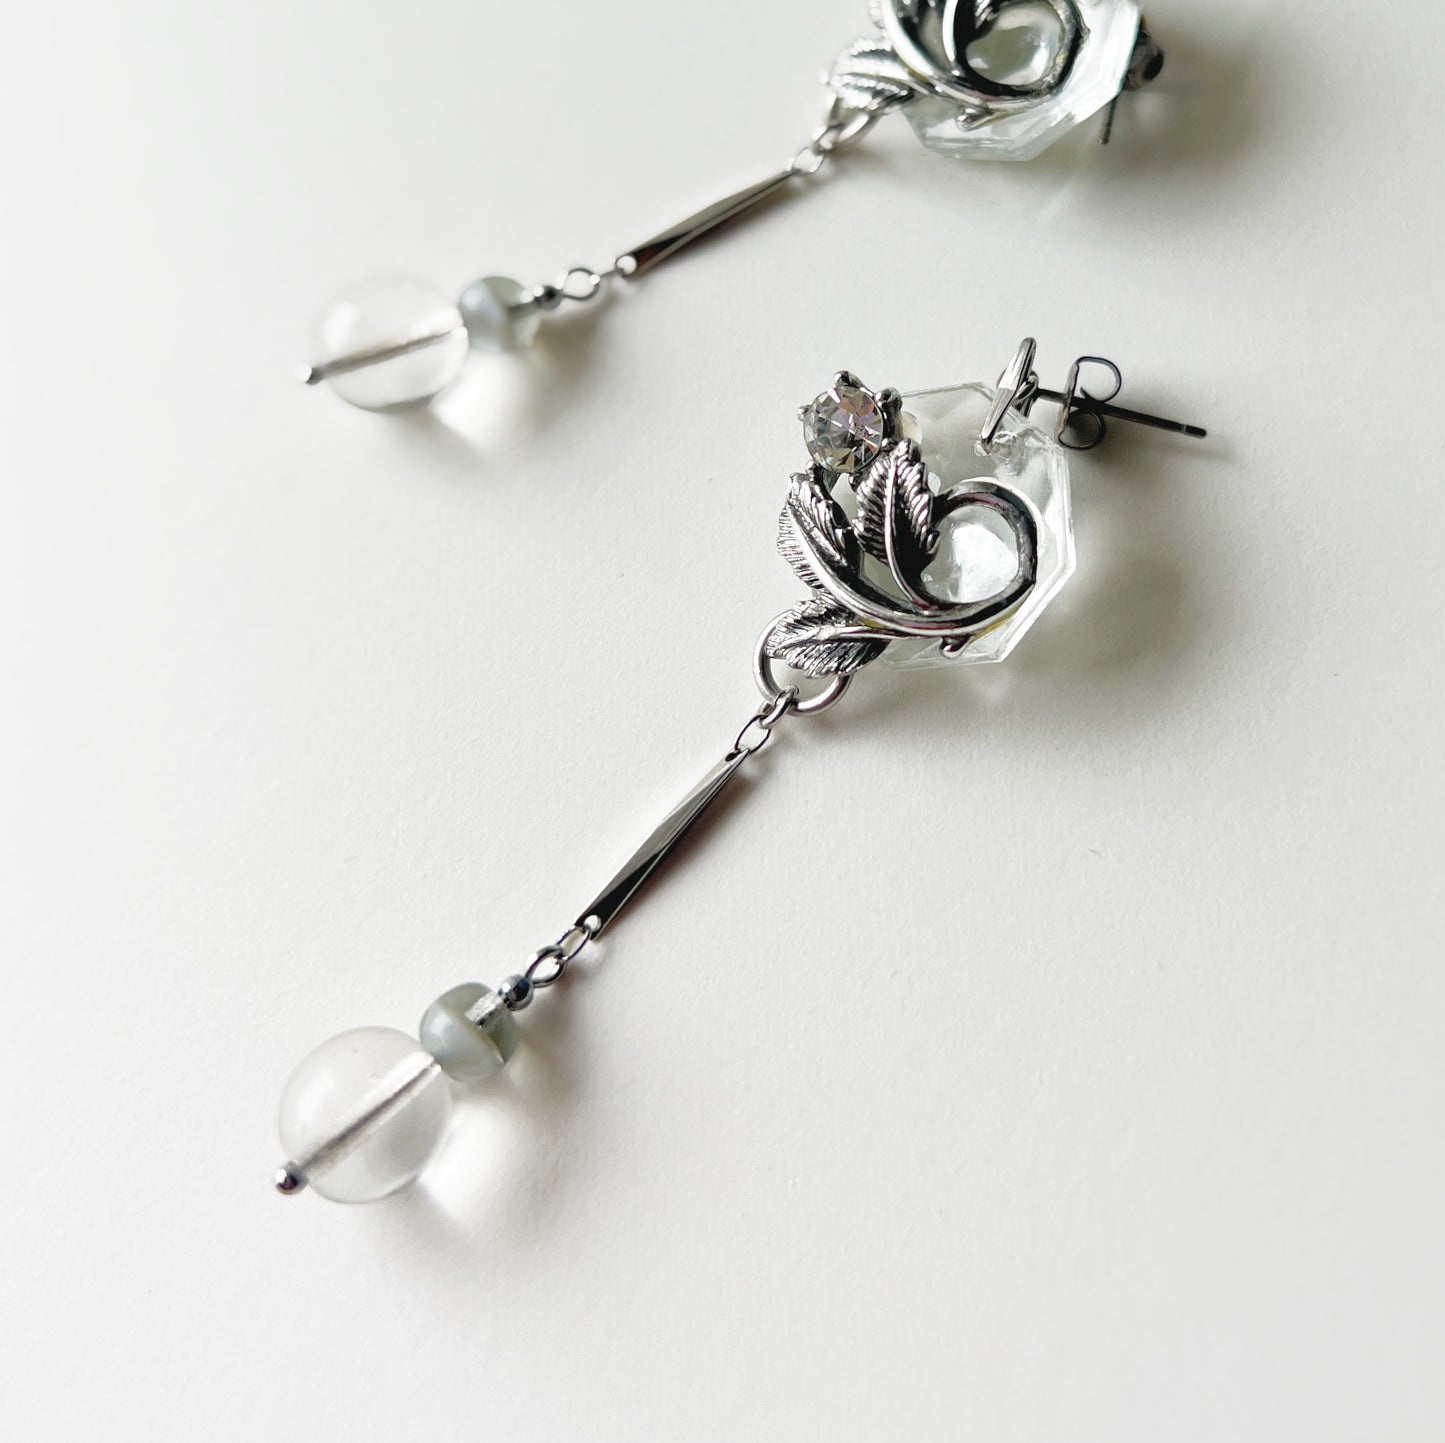 Leaf chandelier earrings